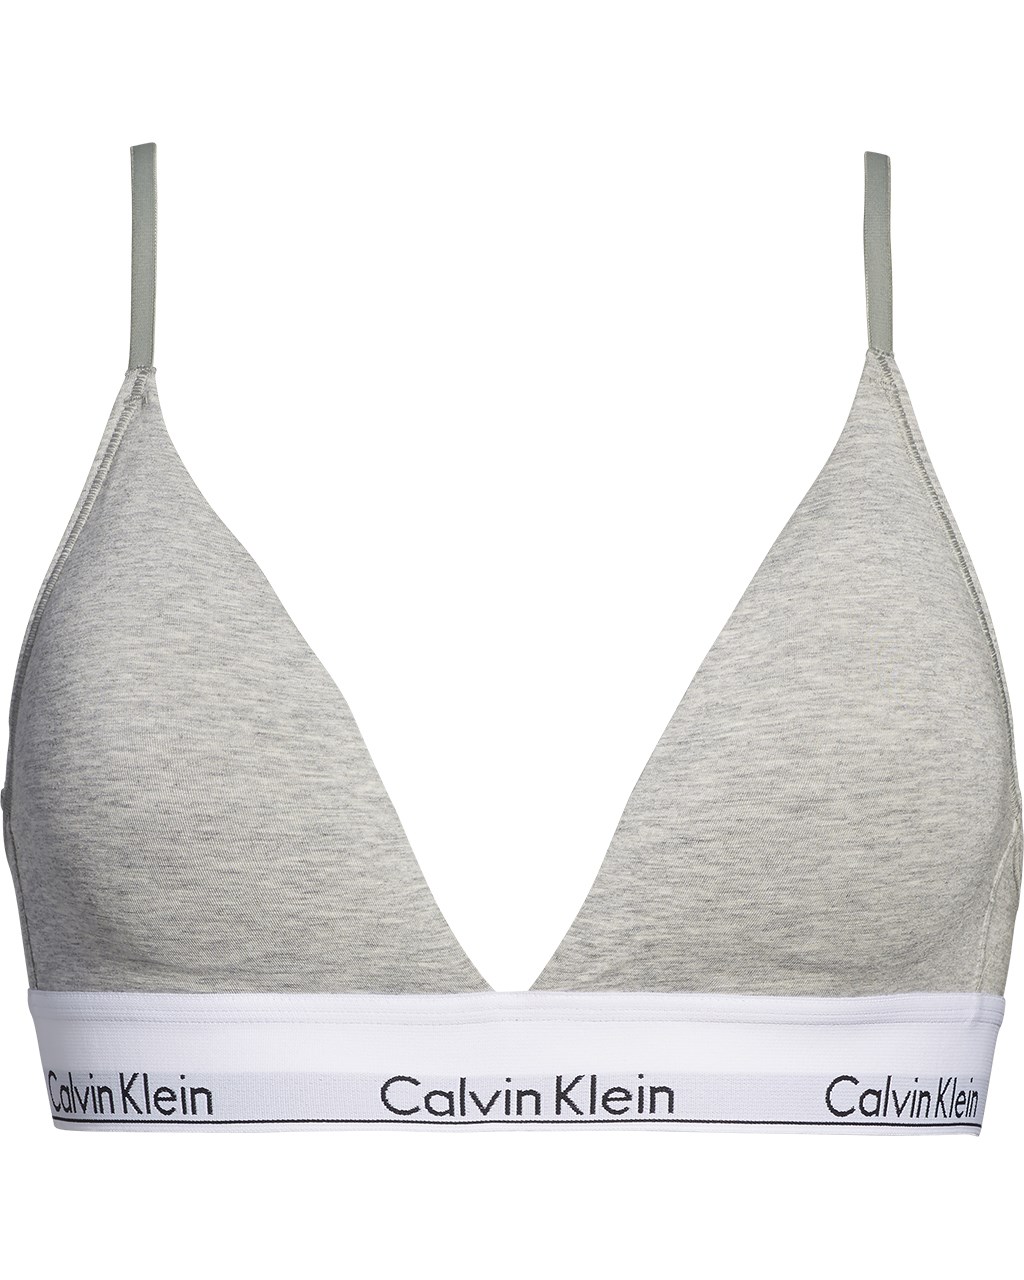 Stylish Calvin Klein Bras